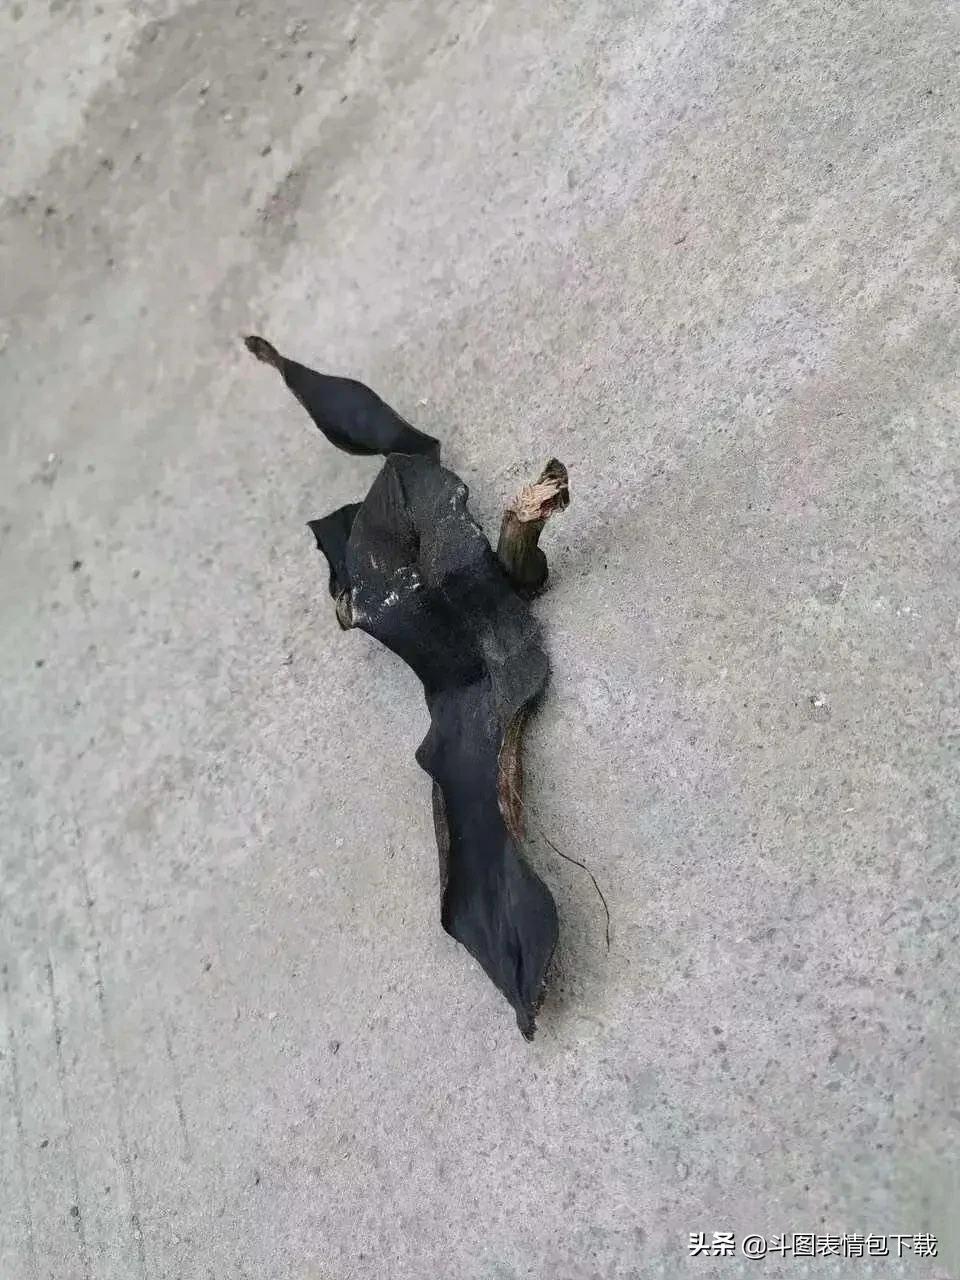 是谁在大马路上乱扔香蕉皮啊吓死我了还以为是蝙蝠